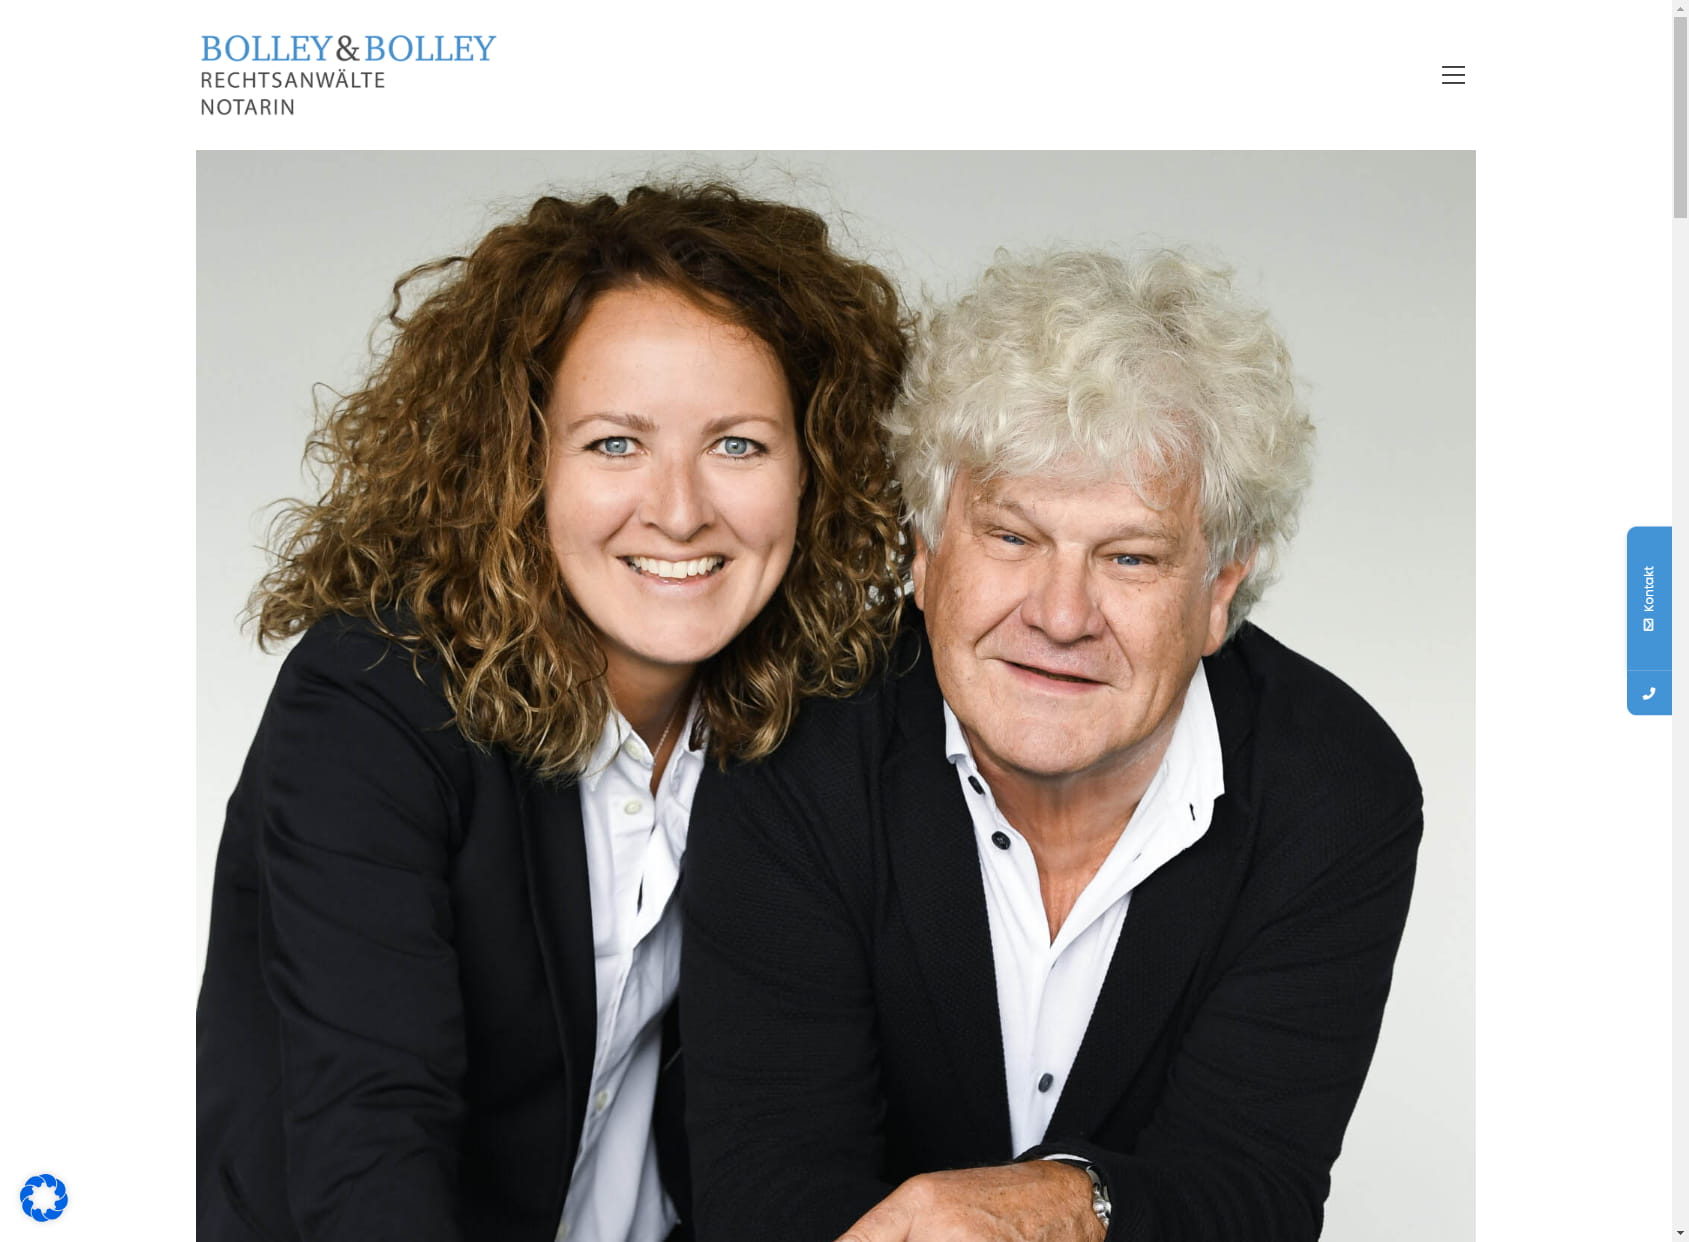 Bolley & Bolley Rechtsanwälte und Notarin in Bürogemeinschaft